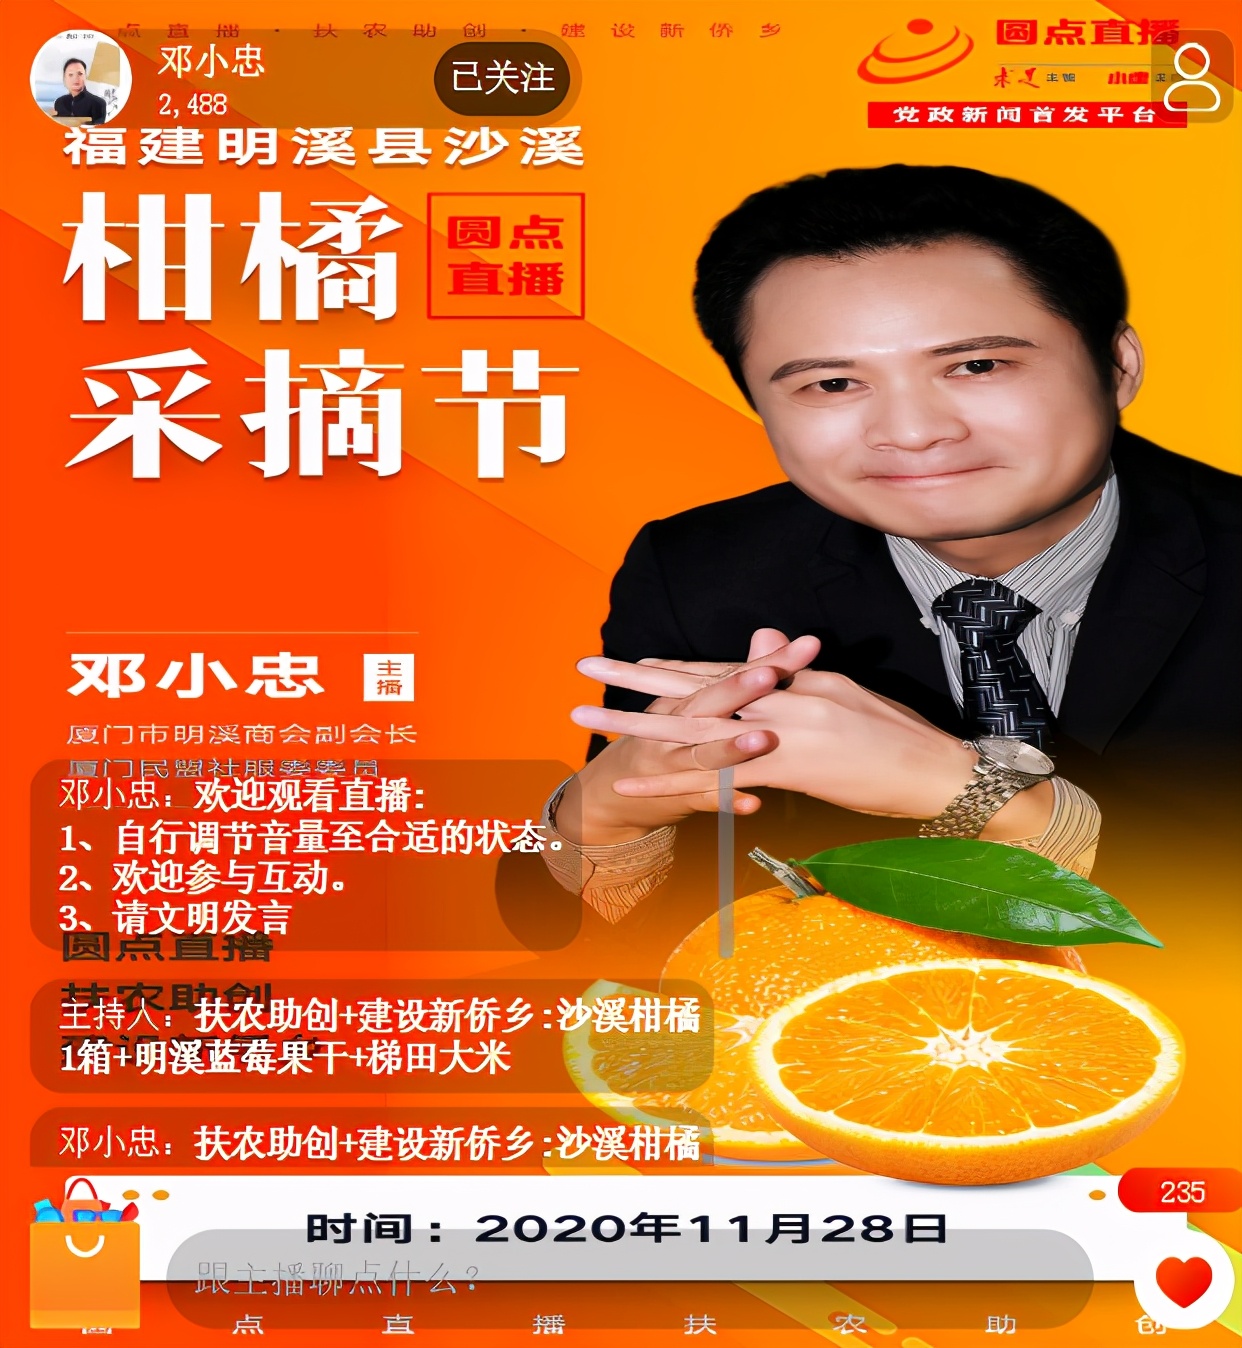 助农网红邓小忠被邀请参加2020年明溪县首届柑橘采摘文化节